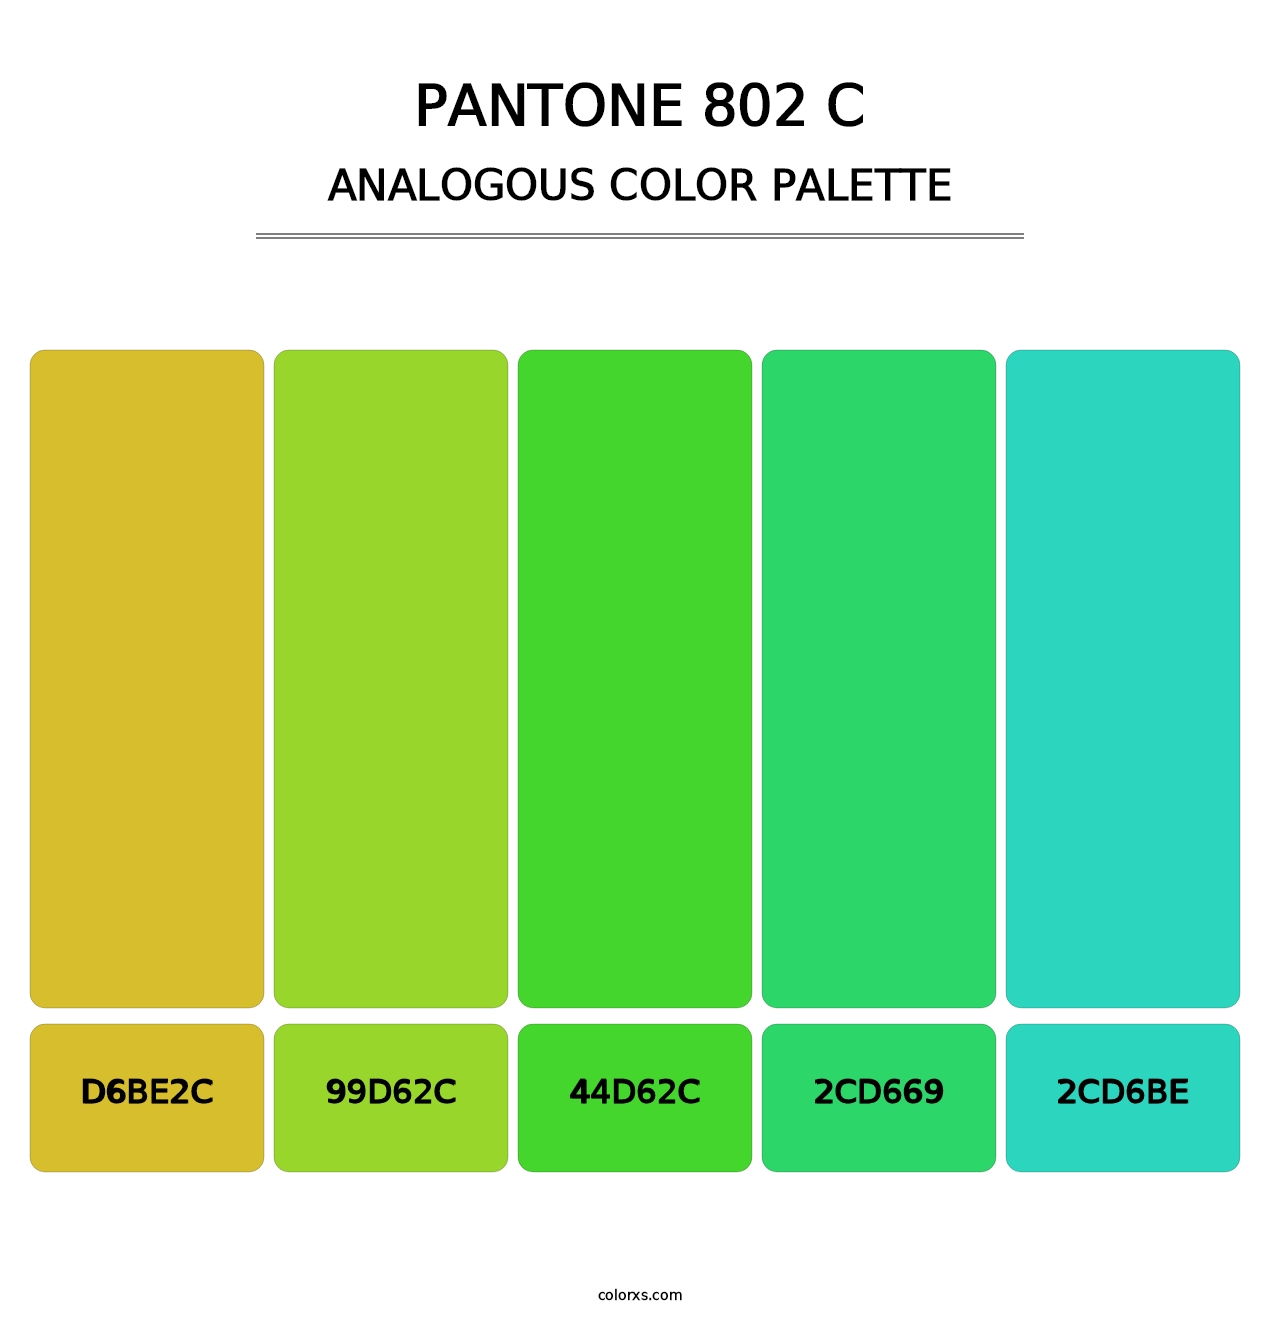 PANTONE 802 C - Analogous Color Palette